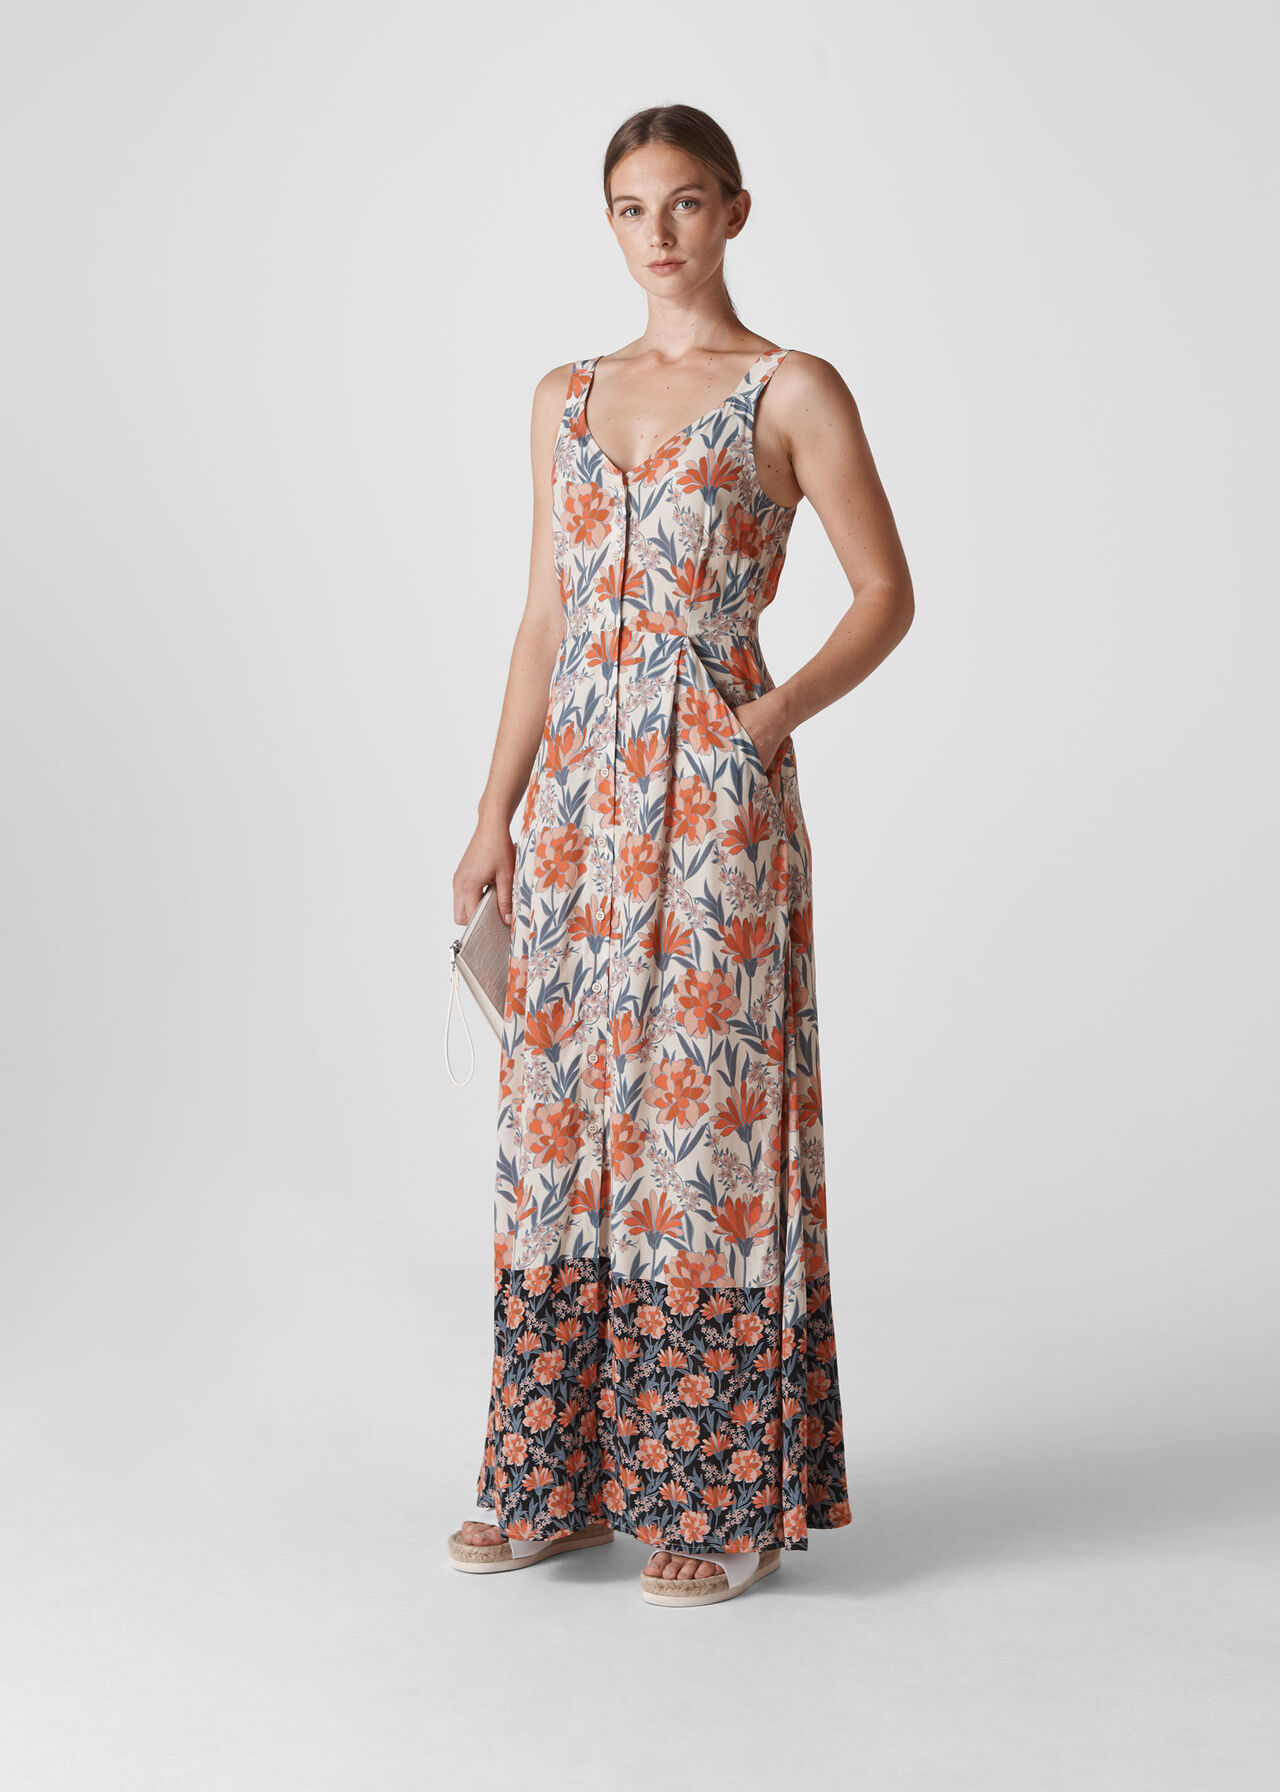 Floral border Print Maxi Dress